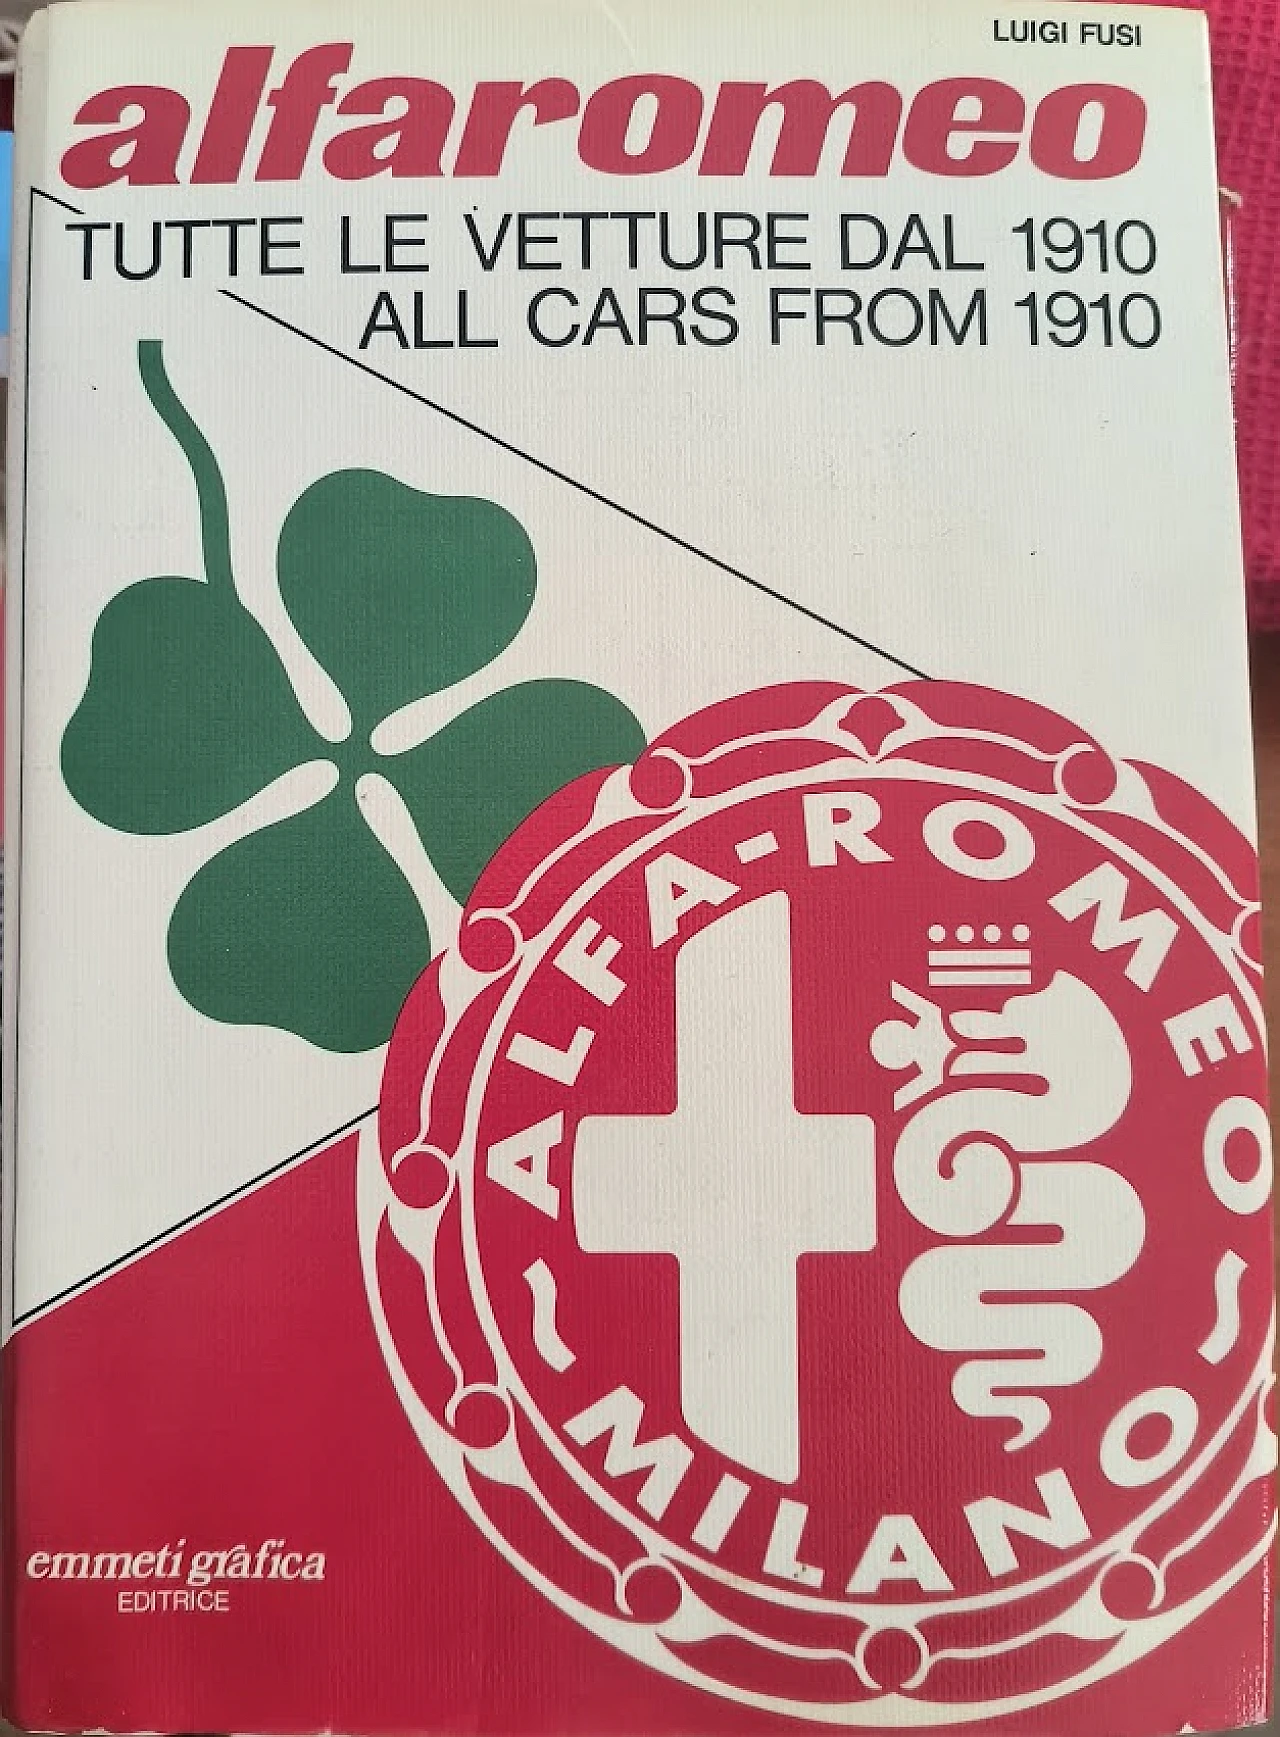 Alfaromeo - Tutte le vetture dal 1910 book by Luigi Fusi, 1978 4